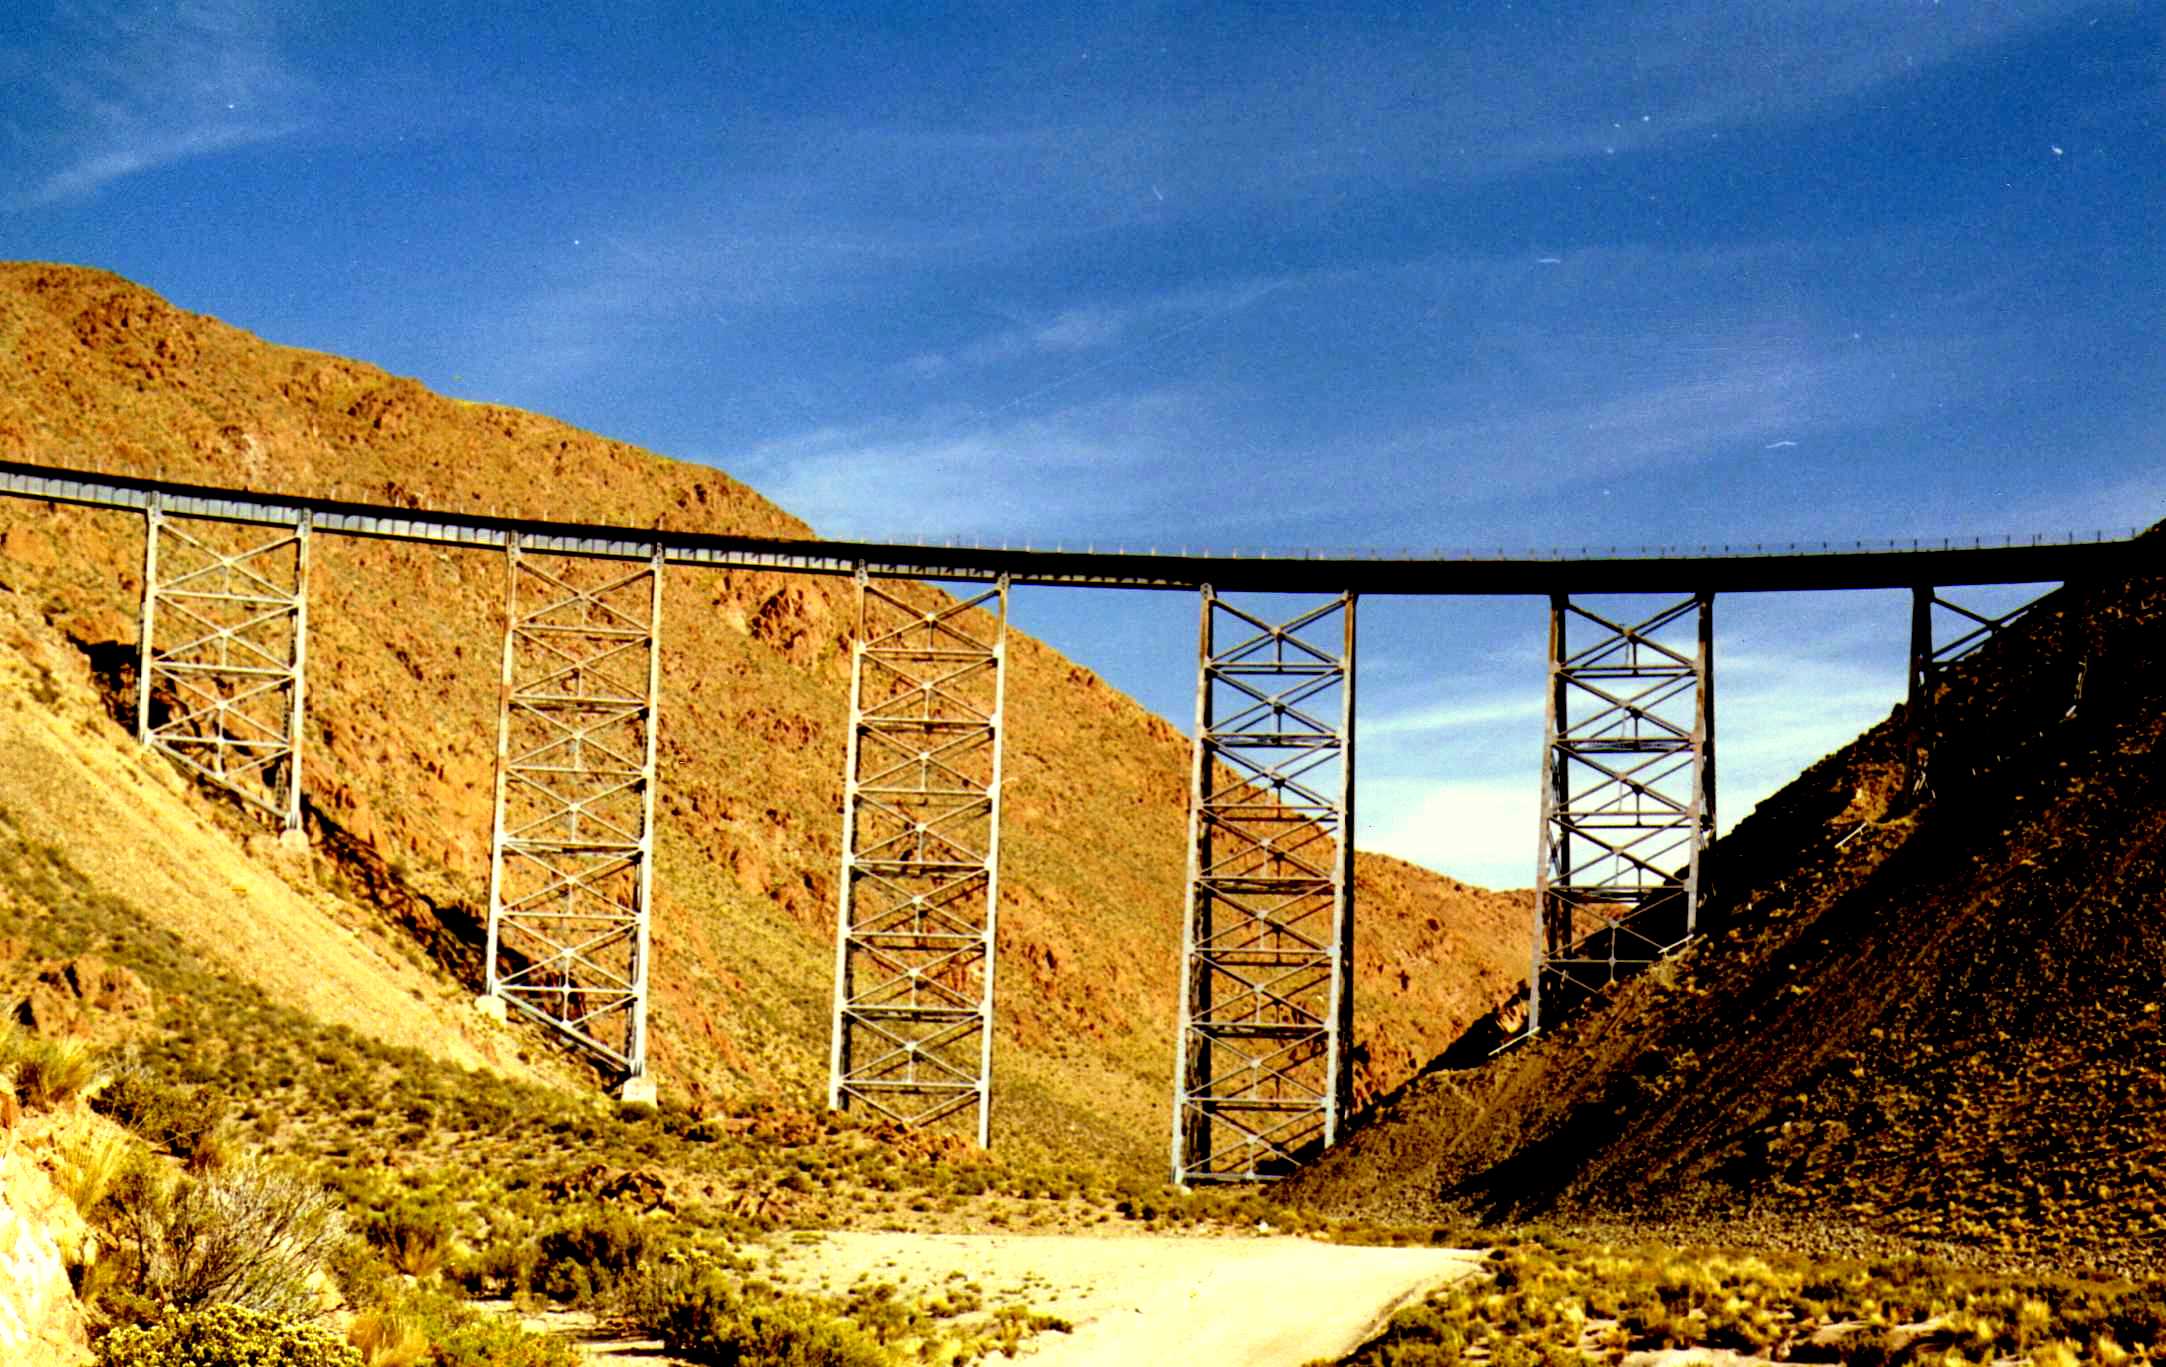 Viaducto la Polvorilla, Argentina